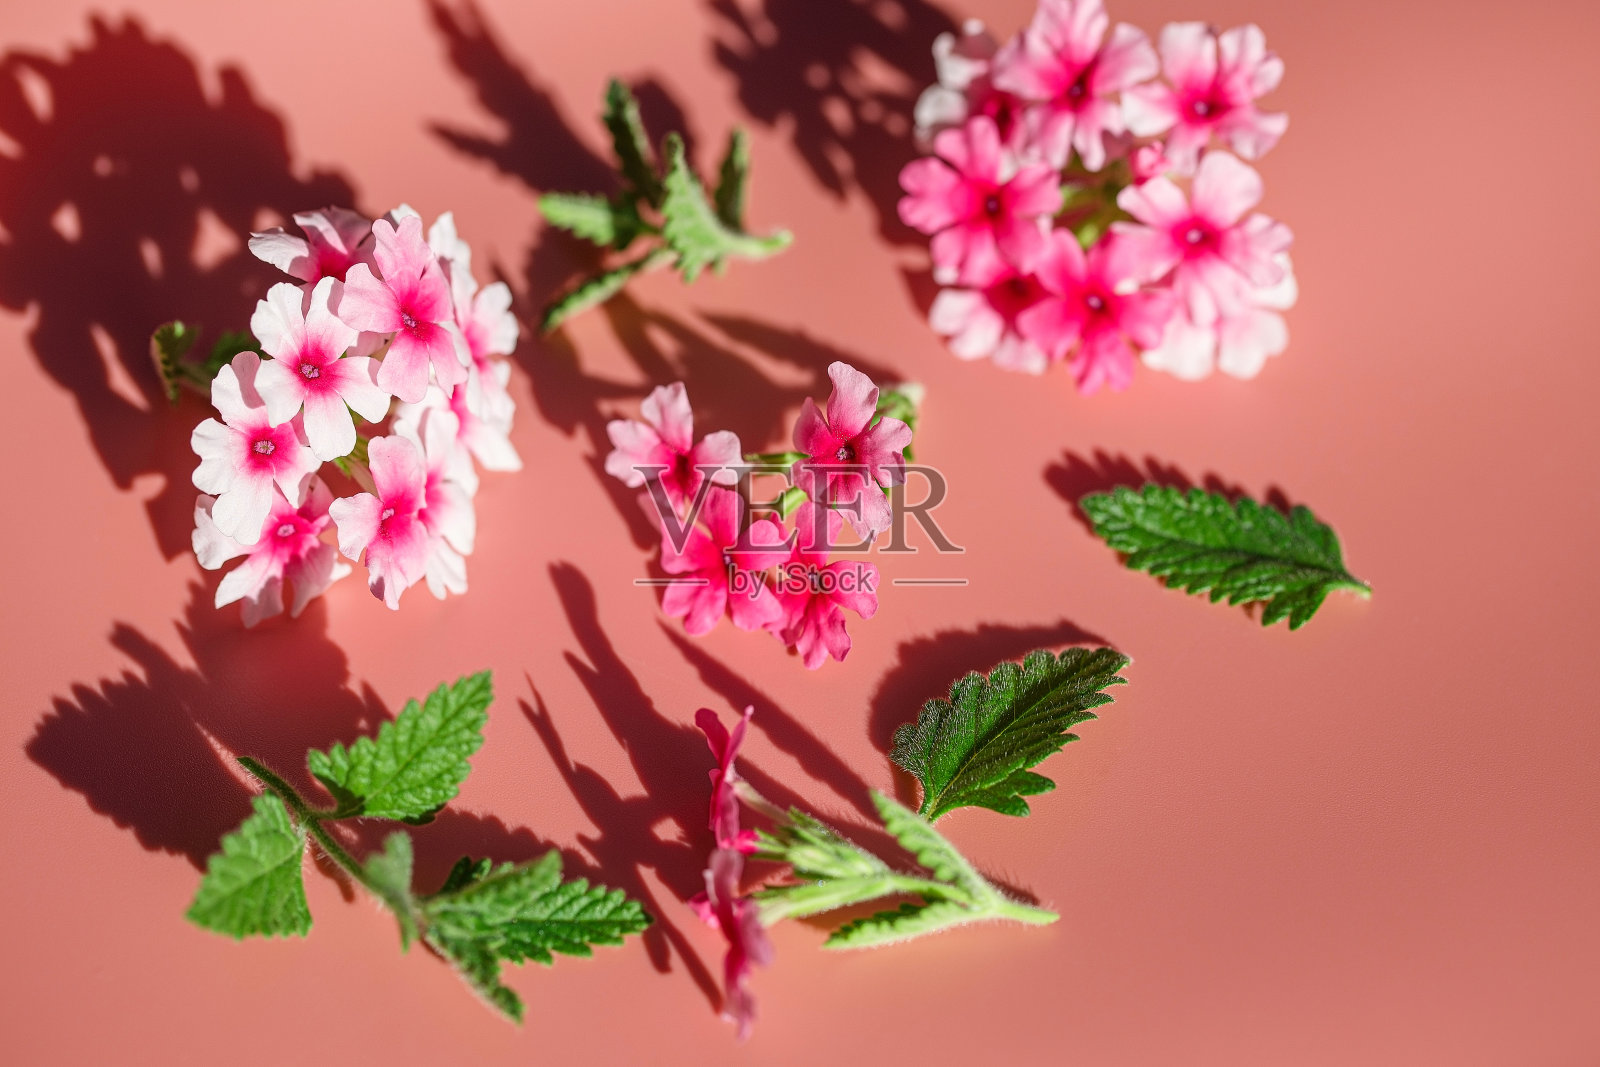 奇异的粉红色小花，细枝和叶子特写。淡红色的背景衬托出精致的夏日气息照片摄影图片